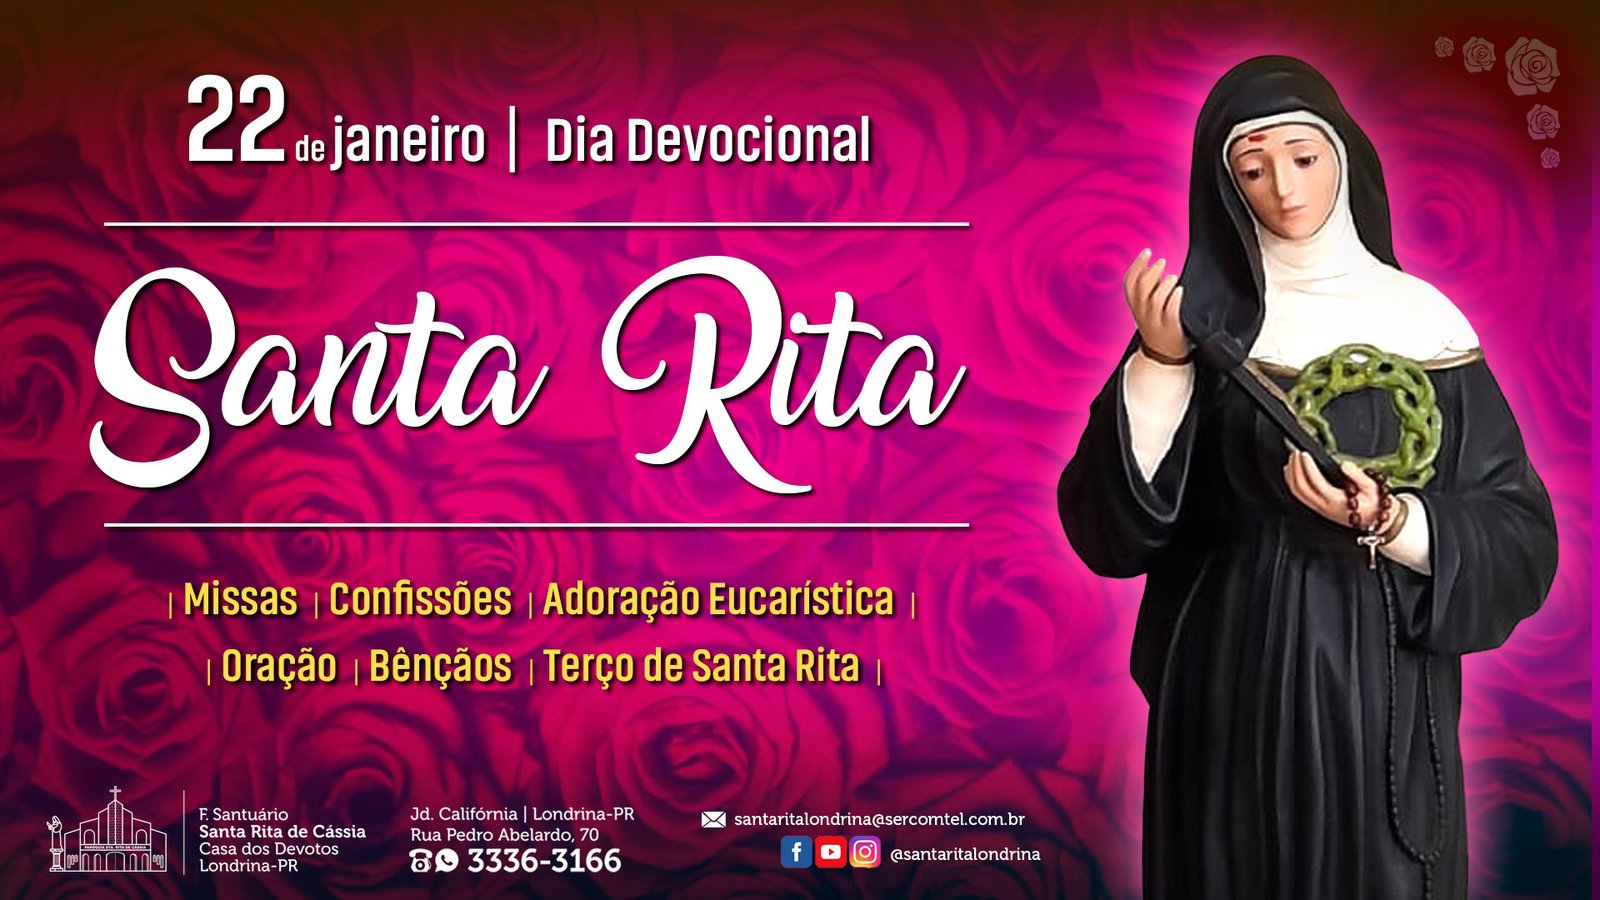 Dia Devocional Santa Rita | 22 Janeiro